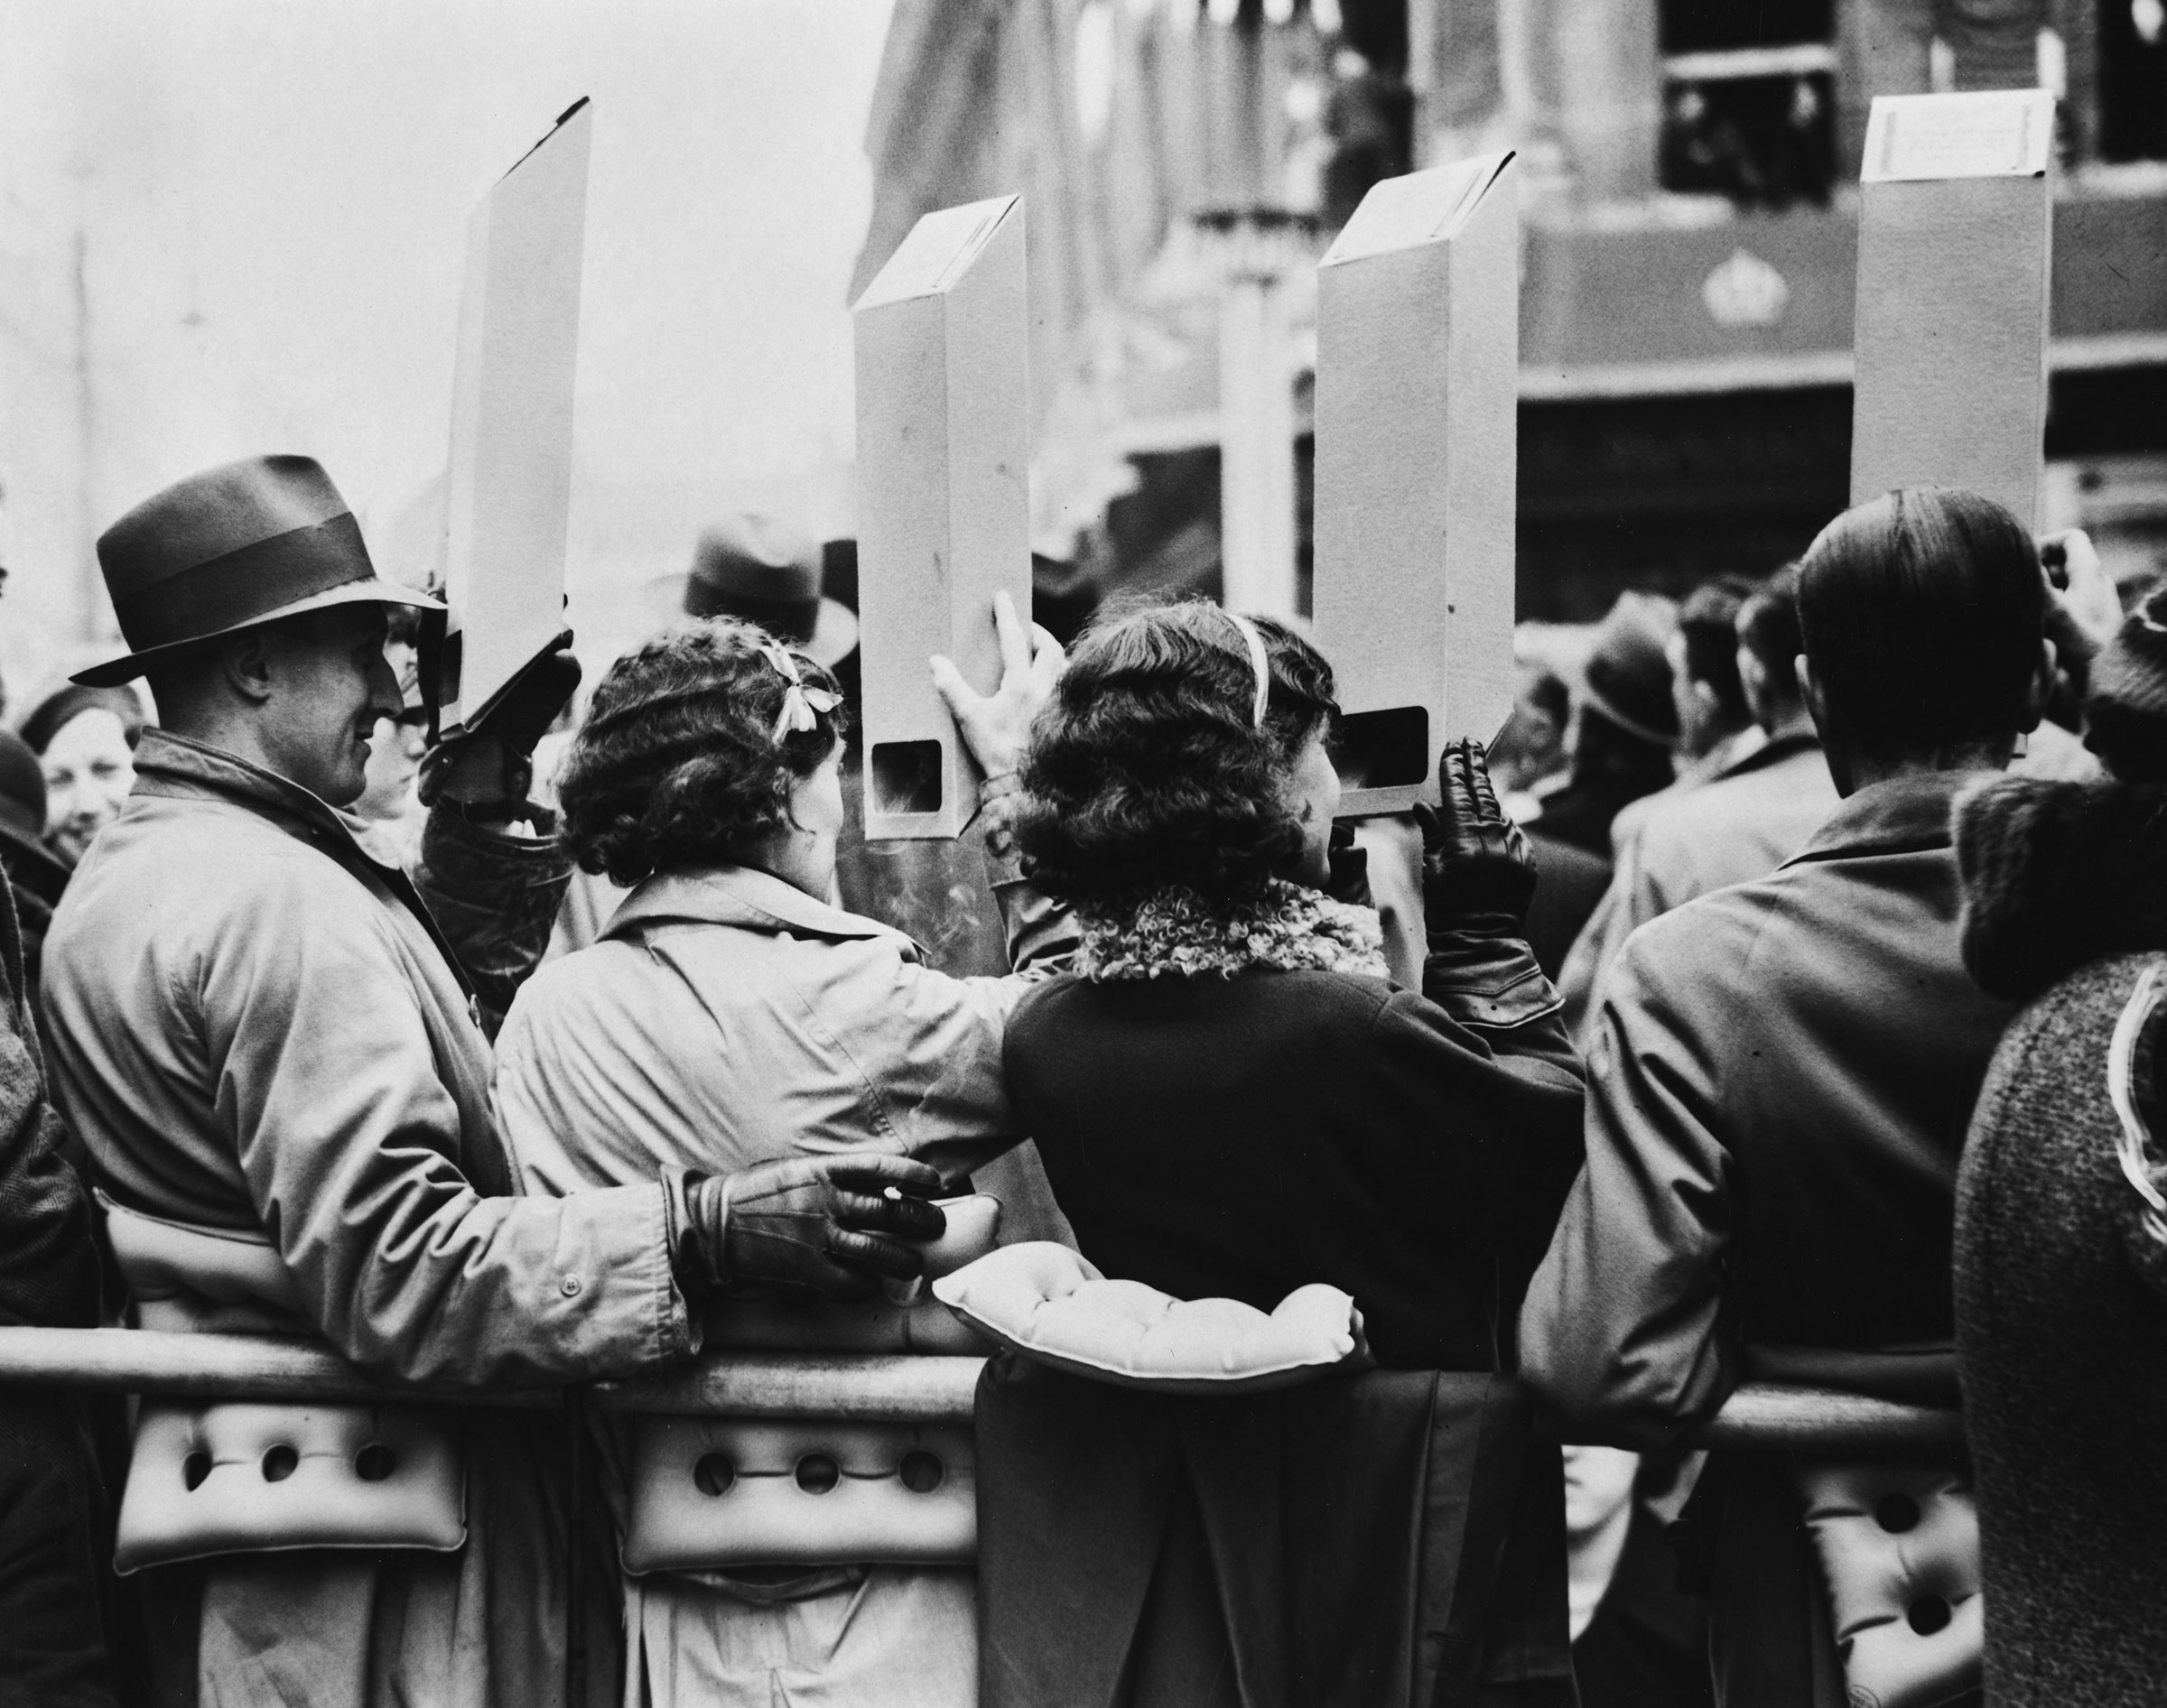 Kalabalıktaki insanlar, 12 Mayıs 1937'deki taç giyme törenine giden Gold State Coach'u bir anlığına yakalamak için karton periskoplar kullanıyor. (Becker/Fox Photos/Hulton Archive/Getty Images)